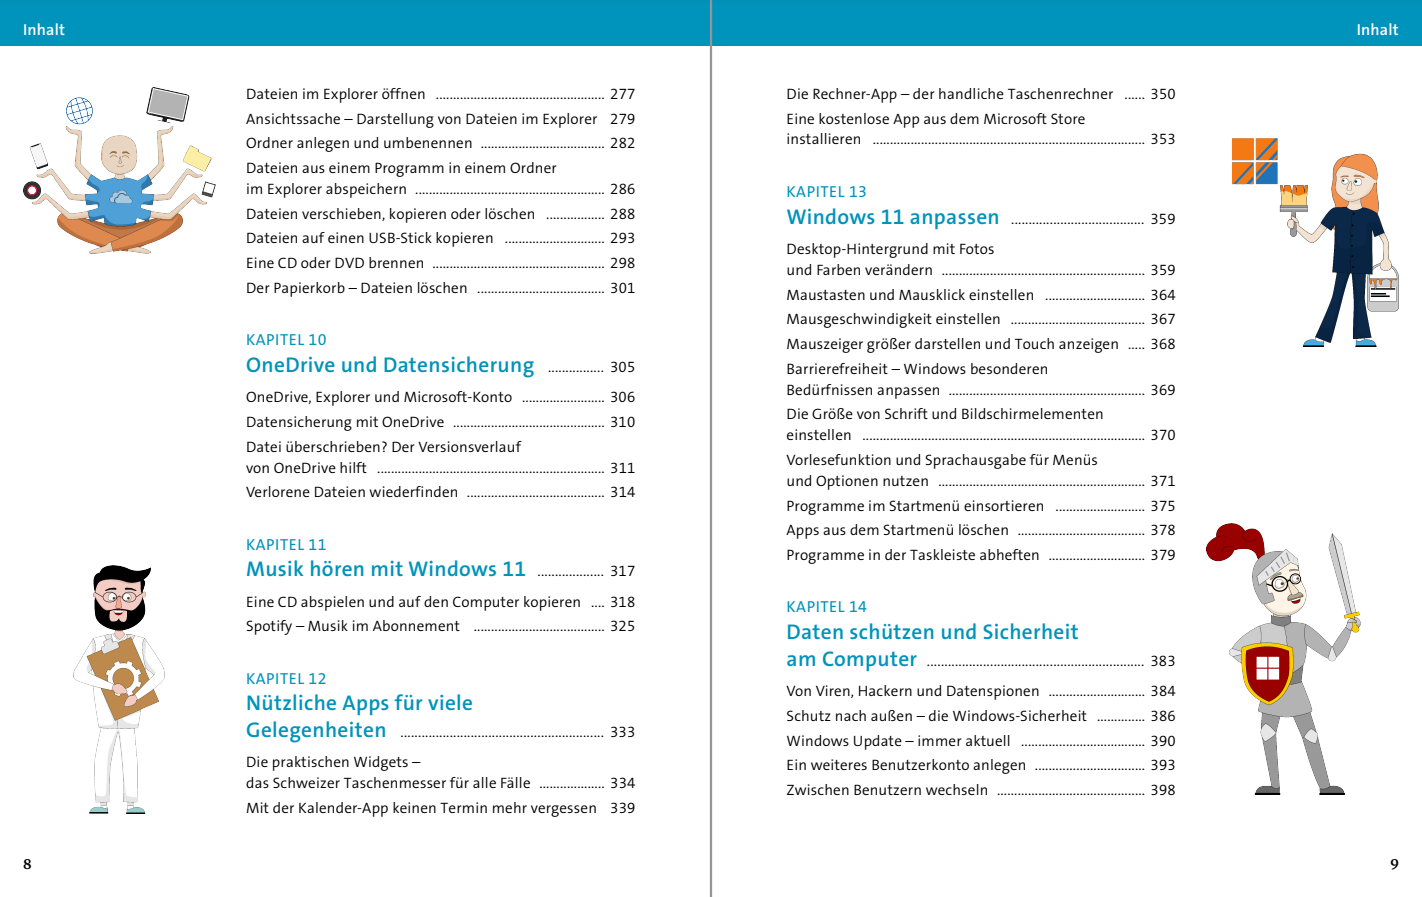 Windows 11 für Senioren (4. Auflg.)